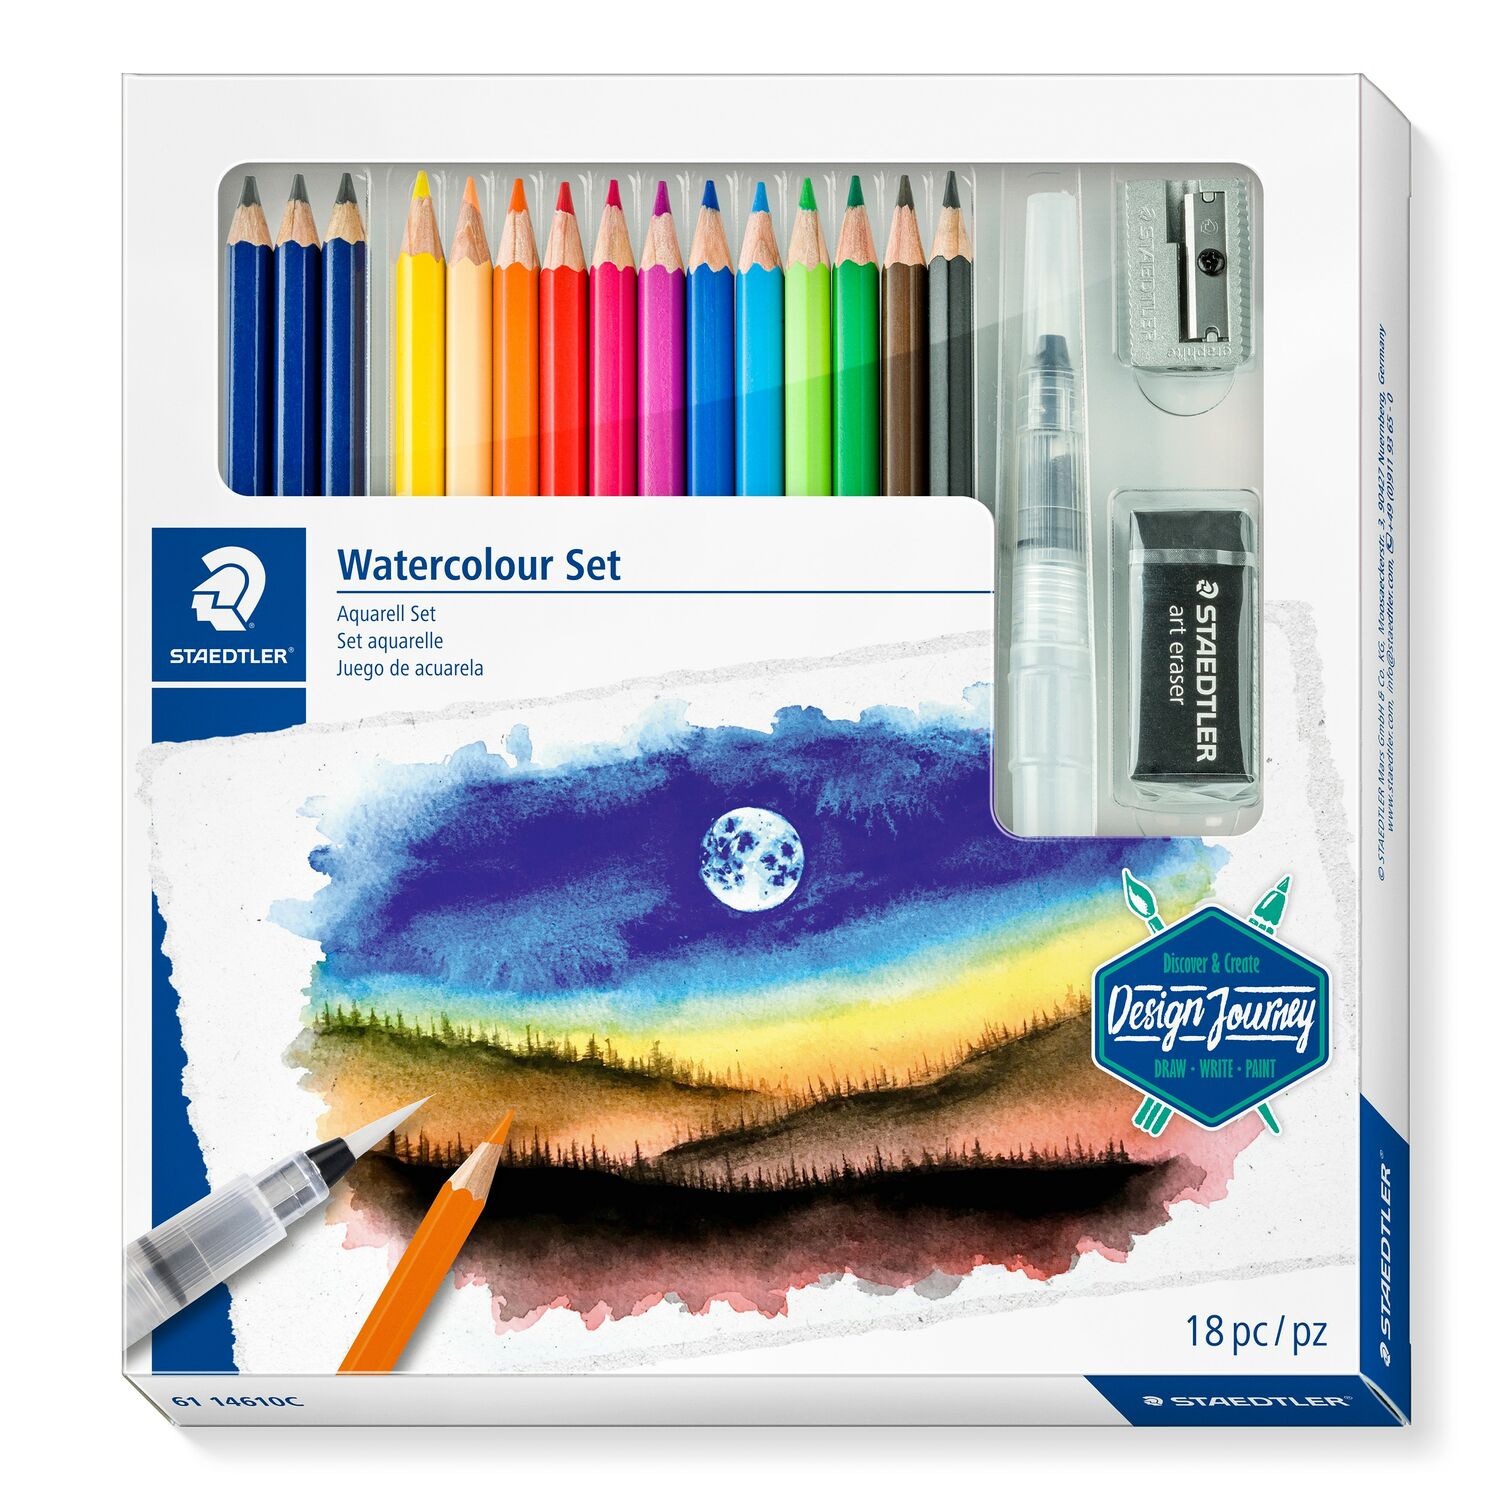 Boîte en carton contenant 3 crayons graphite aquarelle assortis, 12 crayons aquarelle assortis, 1 pinceau à réservoir d’eau, 1 gomme à effacer et 1 taille-crayon en métal